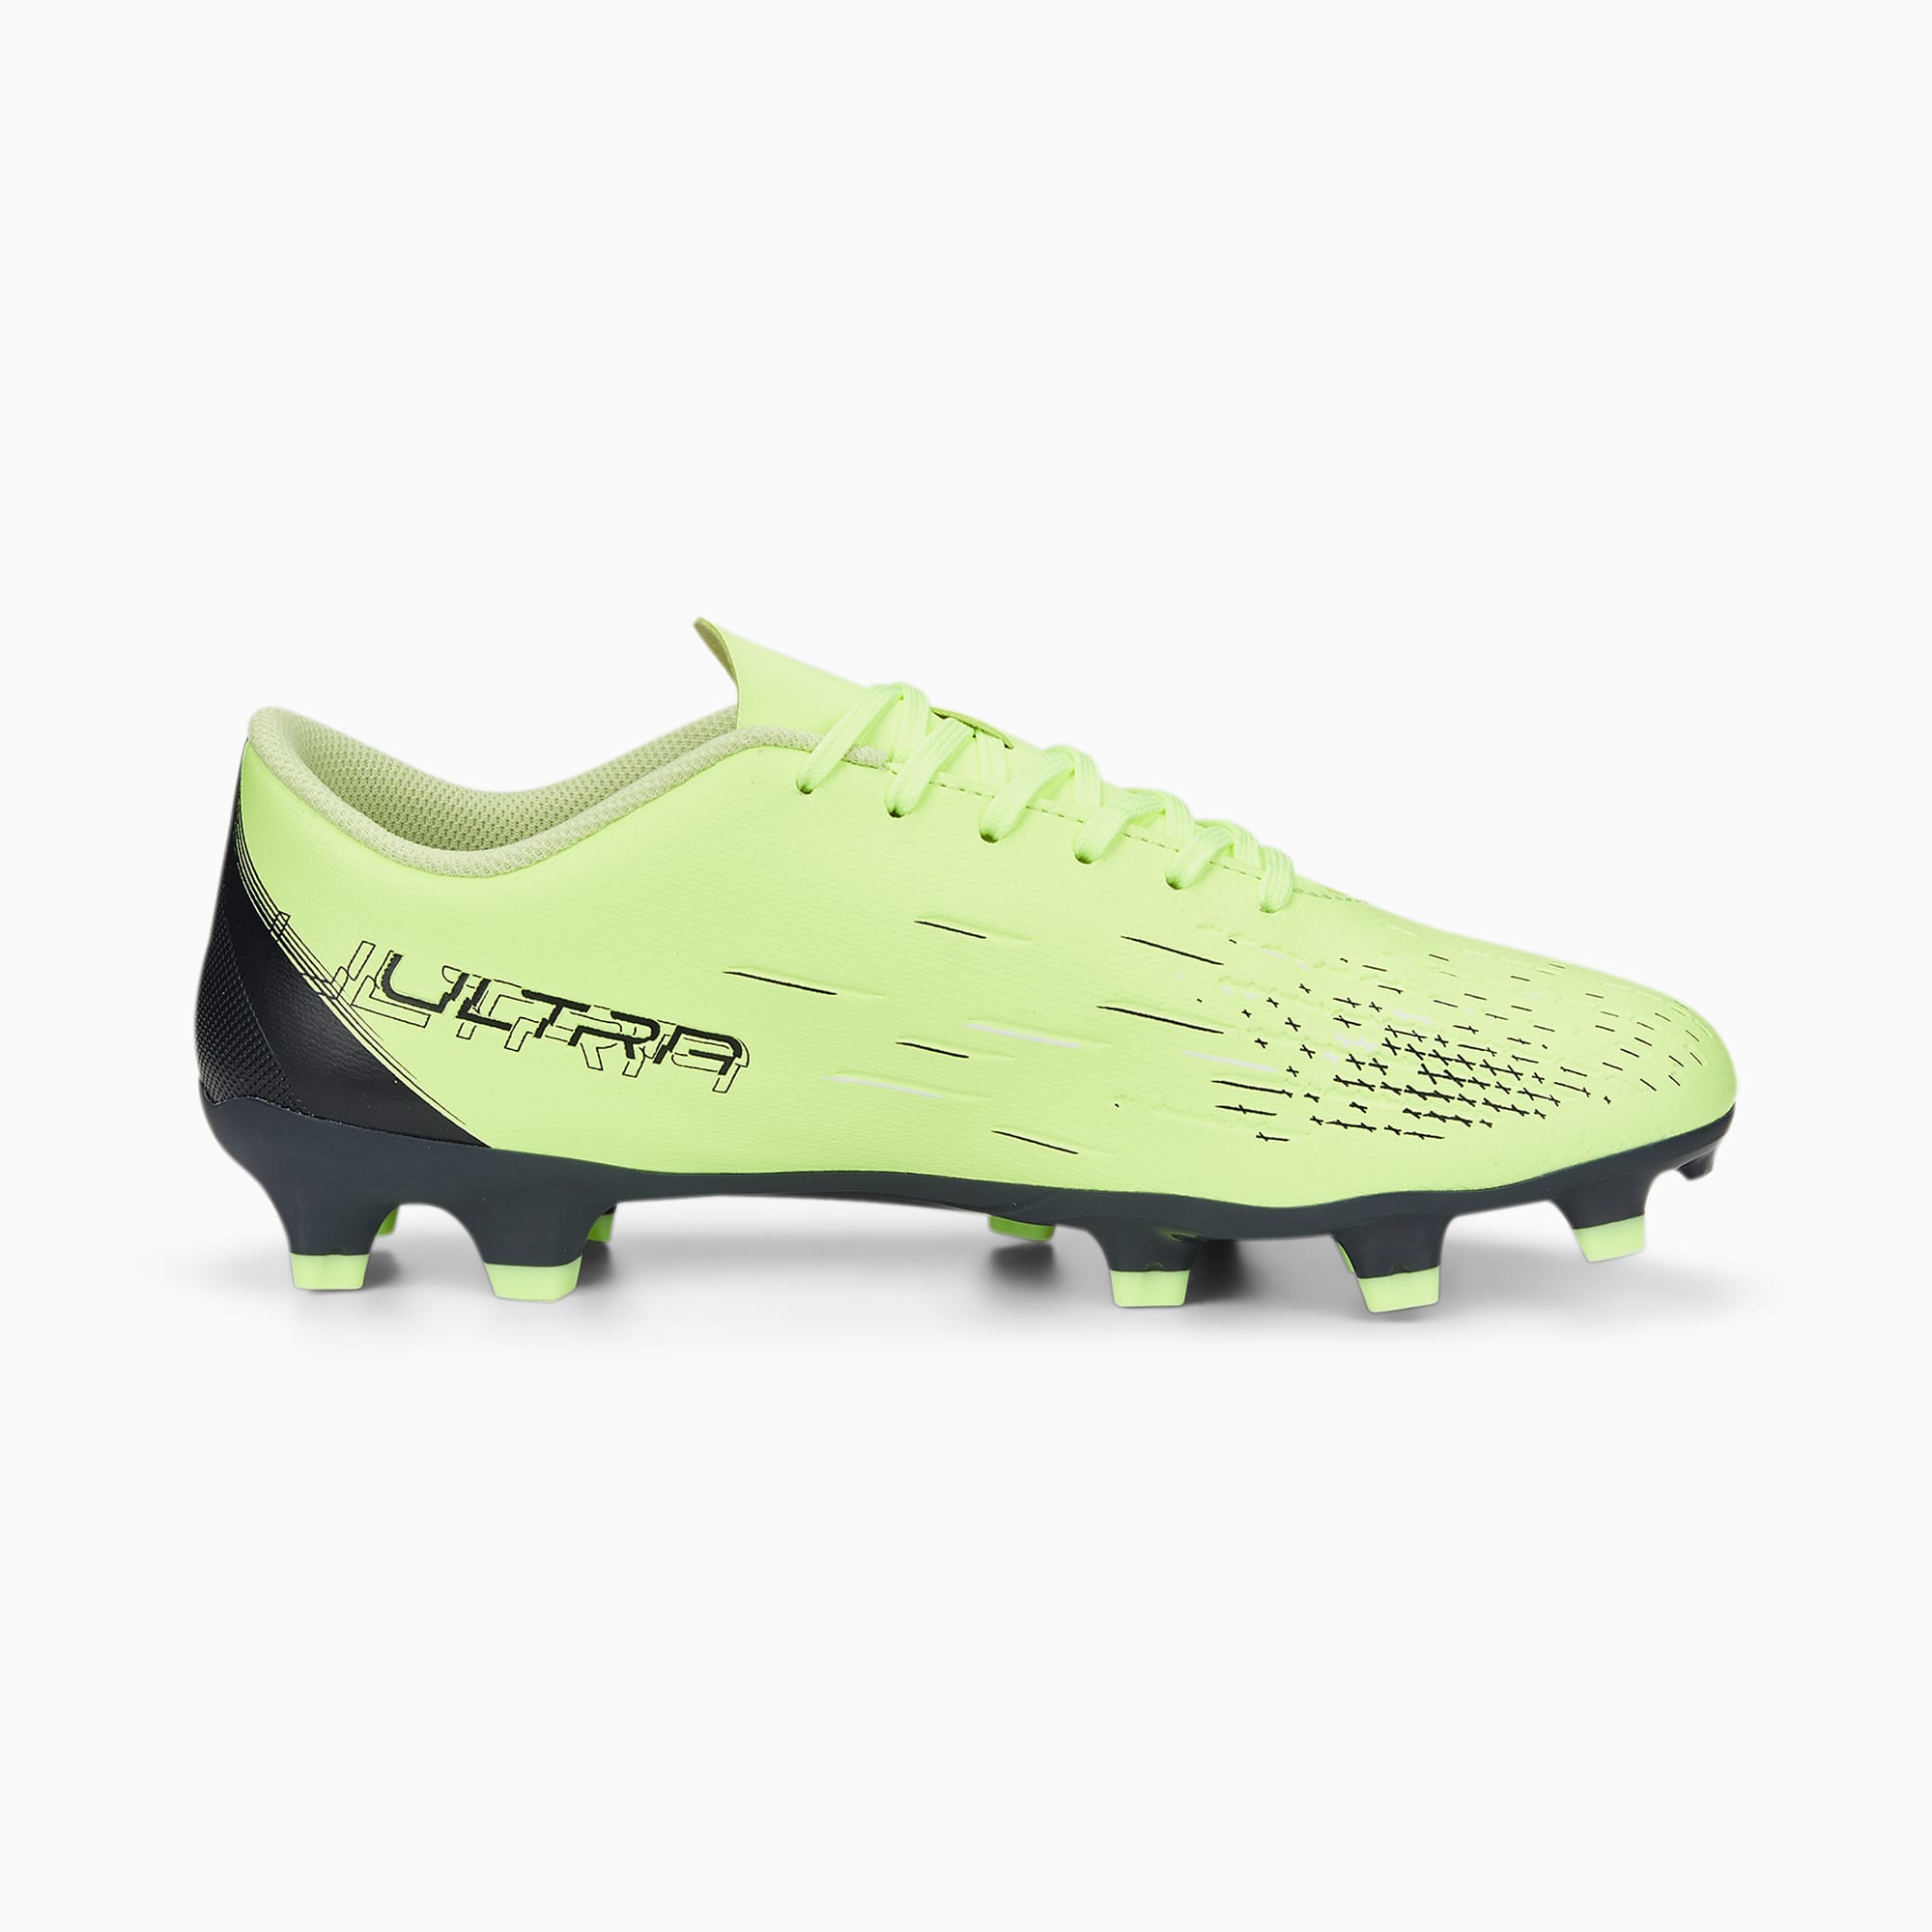 PUMA Ultra Play Fg/ag Football Boots Women Voor in het Blauw Dames Schoenen voor voor Sneakers voor Lage sneakers 